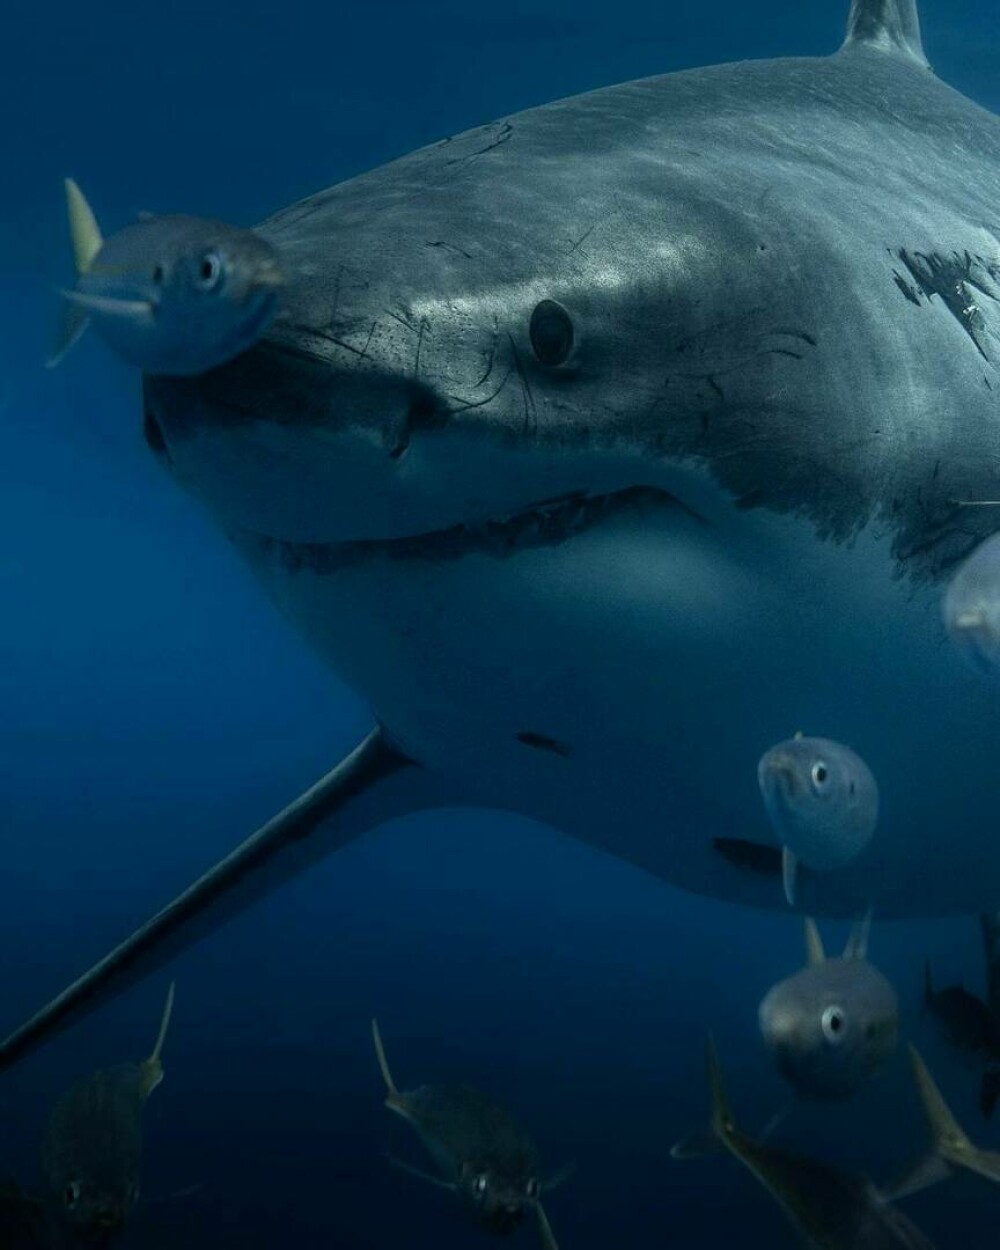 Imagini uimitoare surprinse de supraviețuitorul atacului unui rechin. Fotografiază prădătorii de aproape | GALERIE FOTO - Imaginea 1